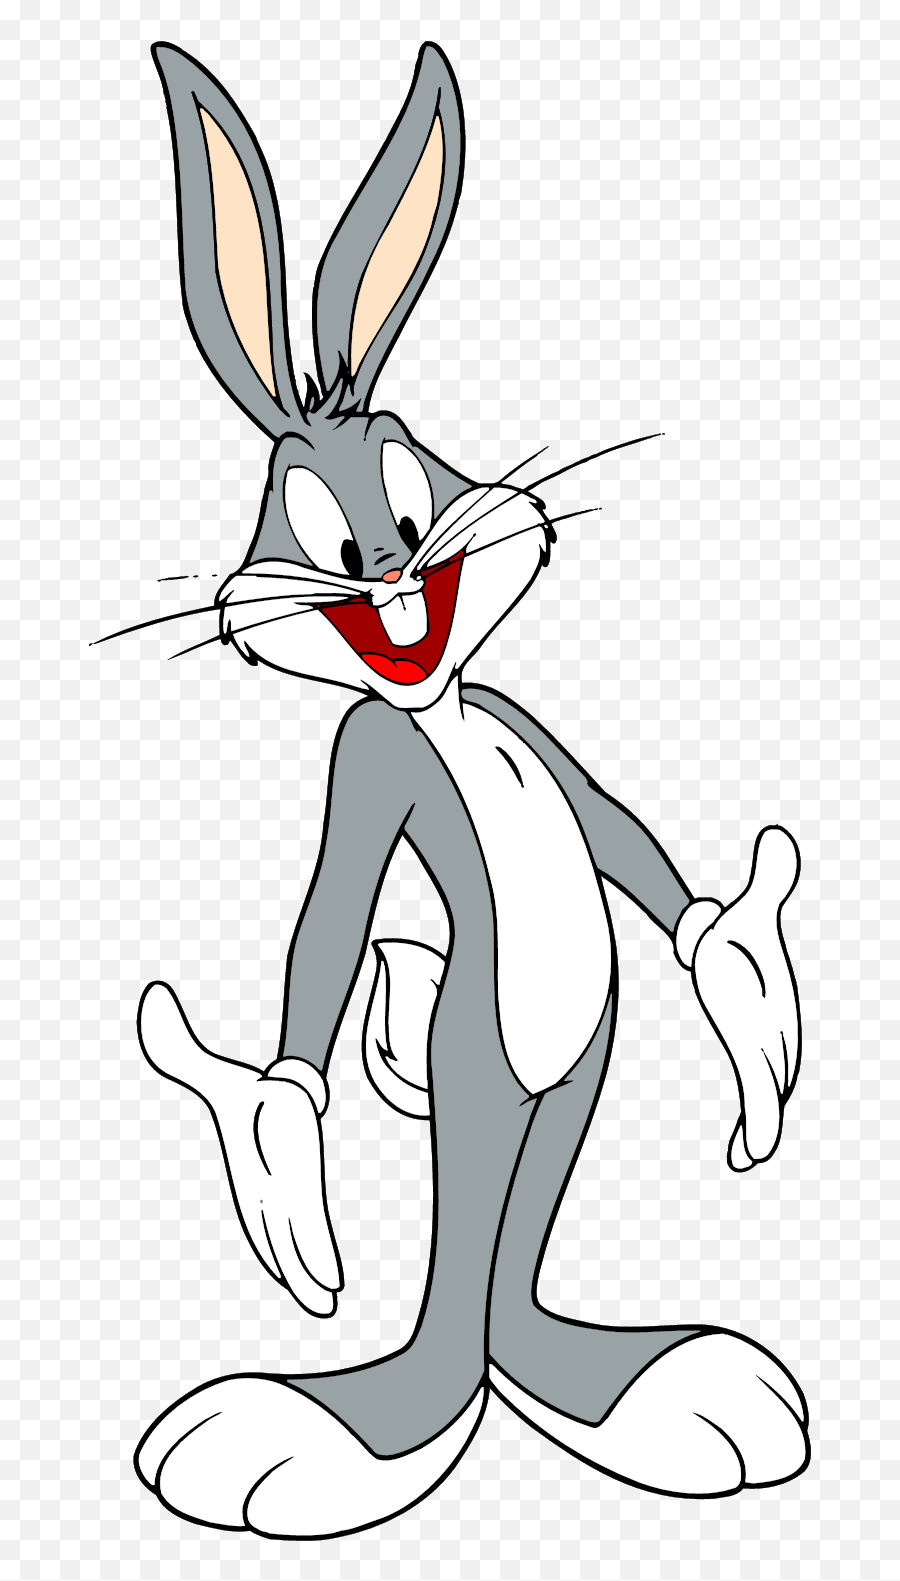 Bugs Bunny Png 3 Image - Bugs Bunny,Bugs Bunny Png